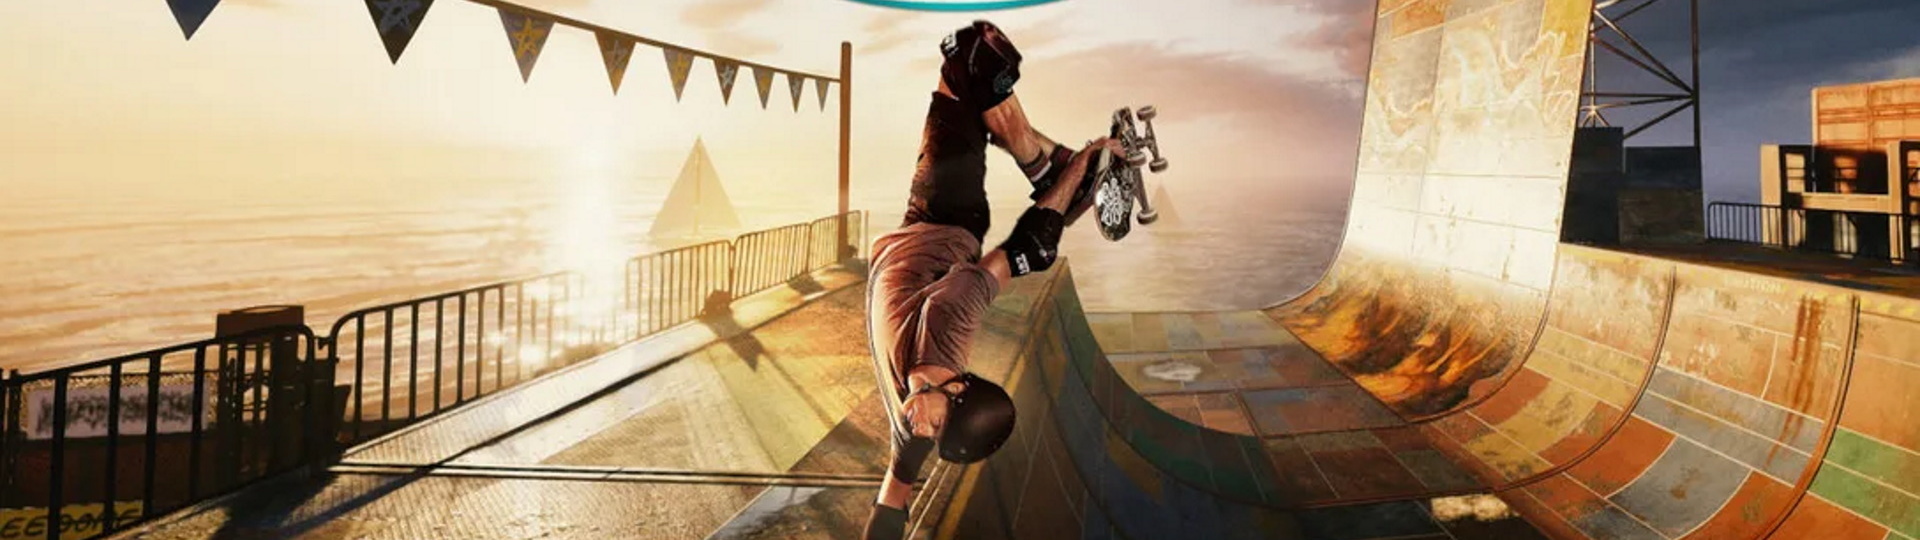 Potvrzeno: Tony Hawk's Pro Skater 1+2 dostane nativní PS5 verzi | Videa